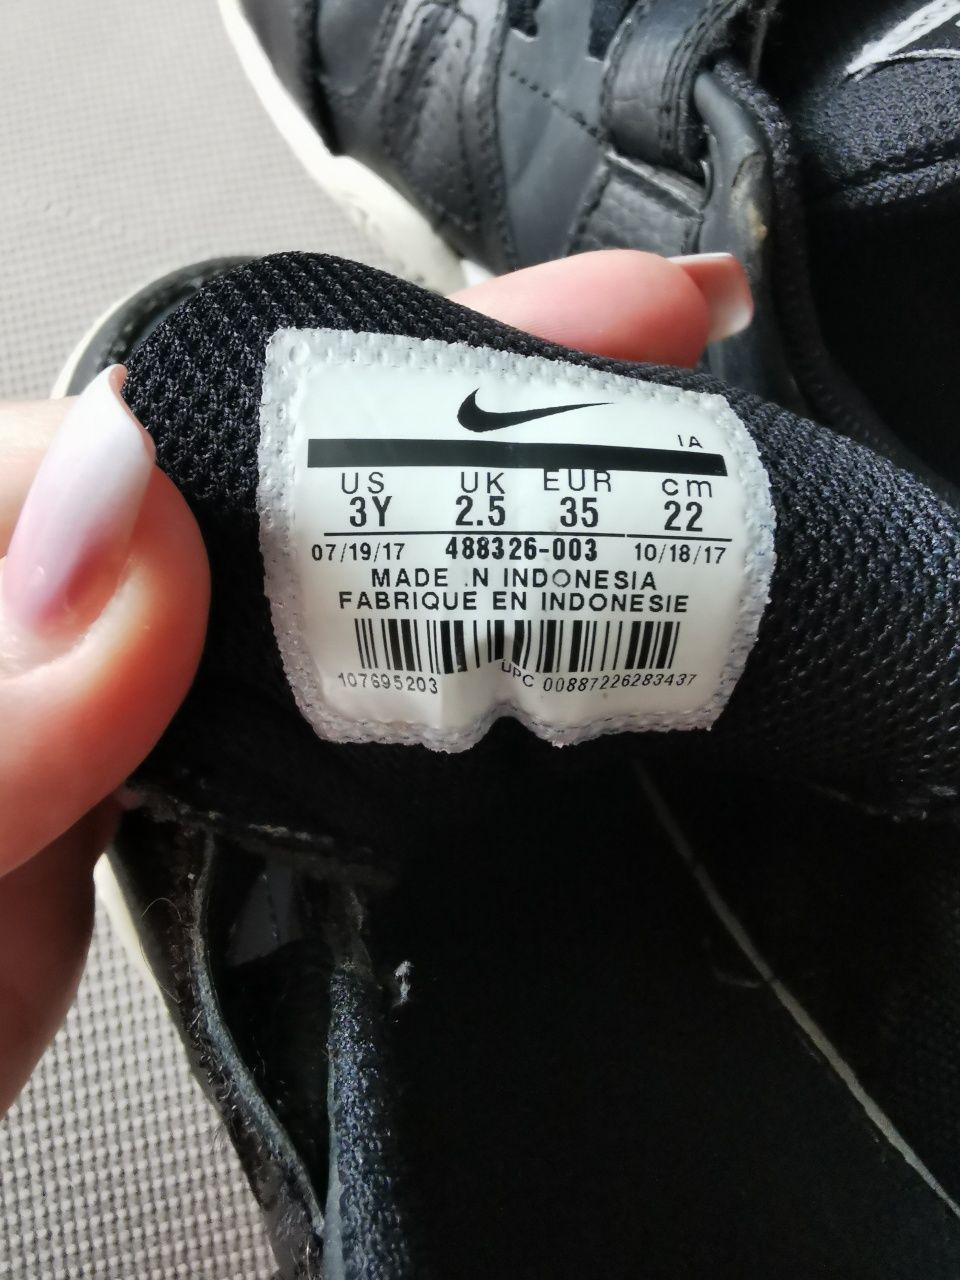 Adidași Nike, Originali, mărimea 35